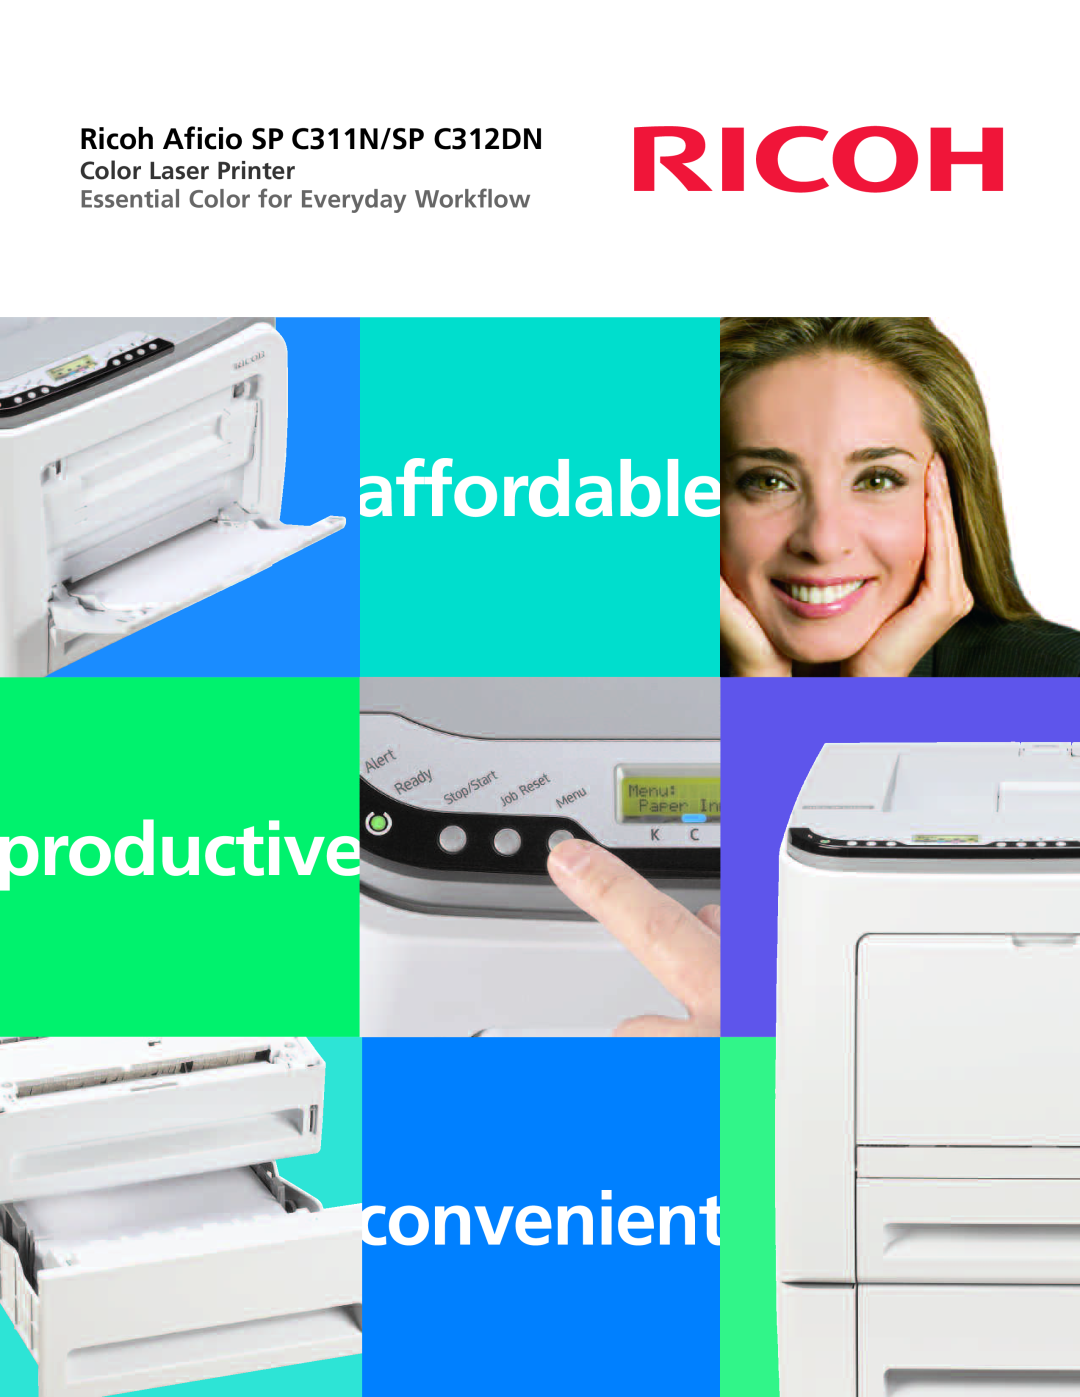 Ricoh manual affordable, productive, convenient, Ricoh Aficio SP C311N/SP C312DN, Color Laser Printer 